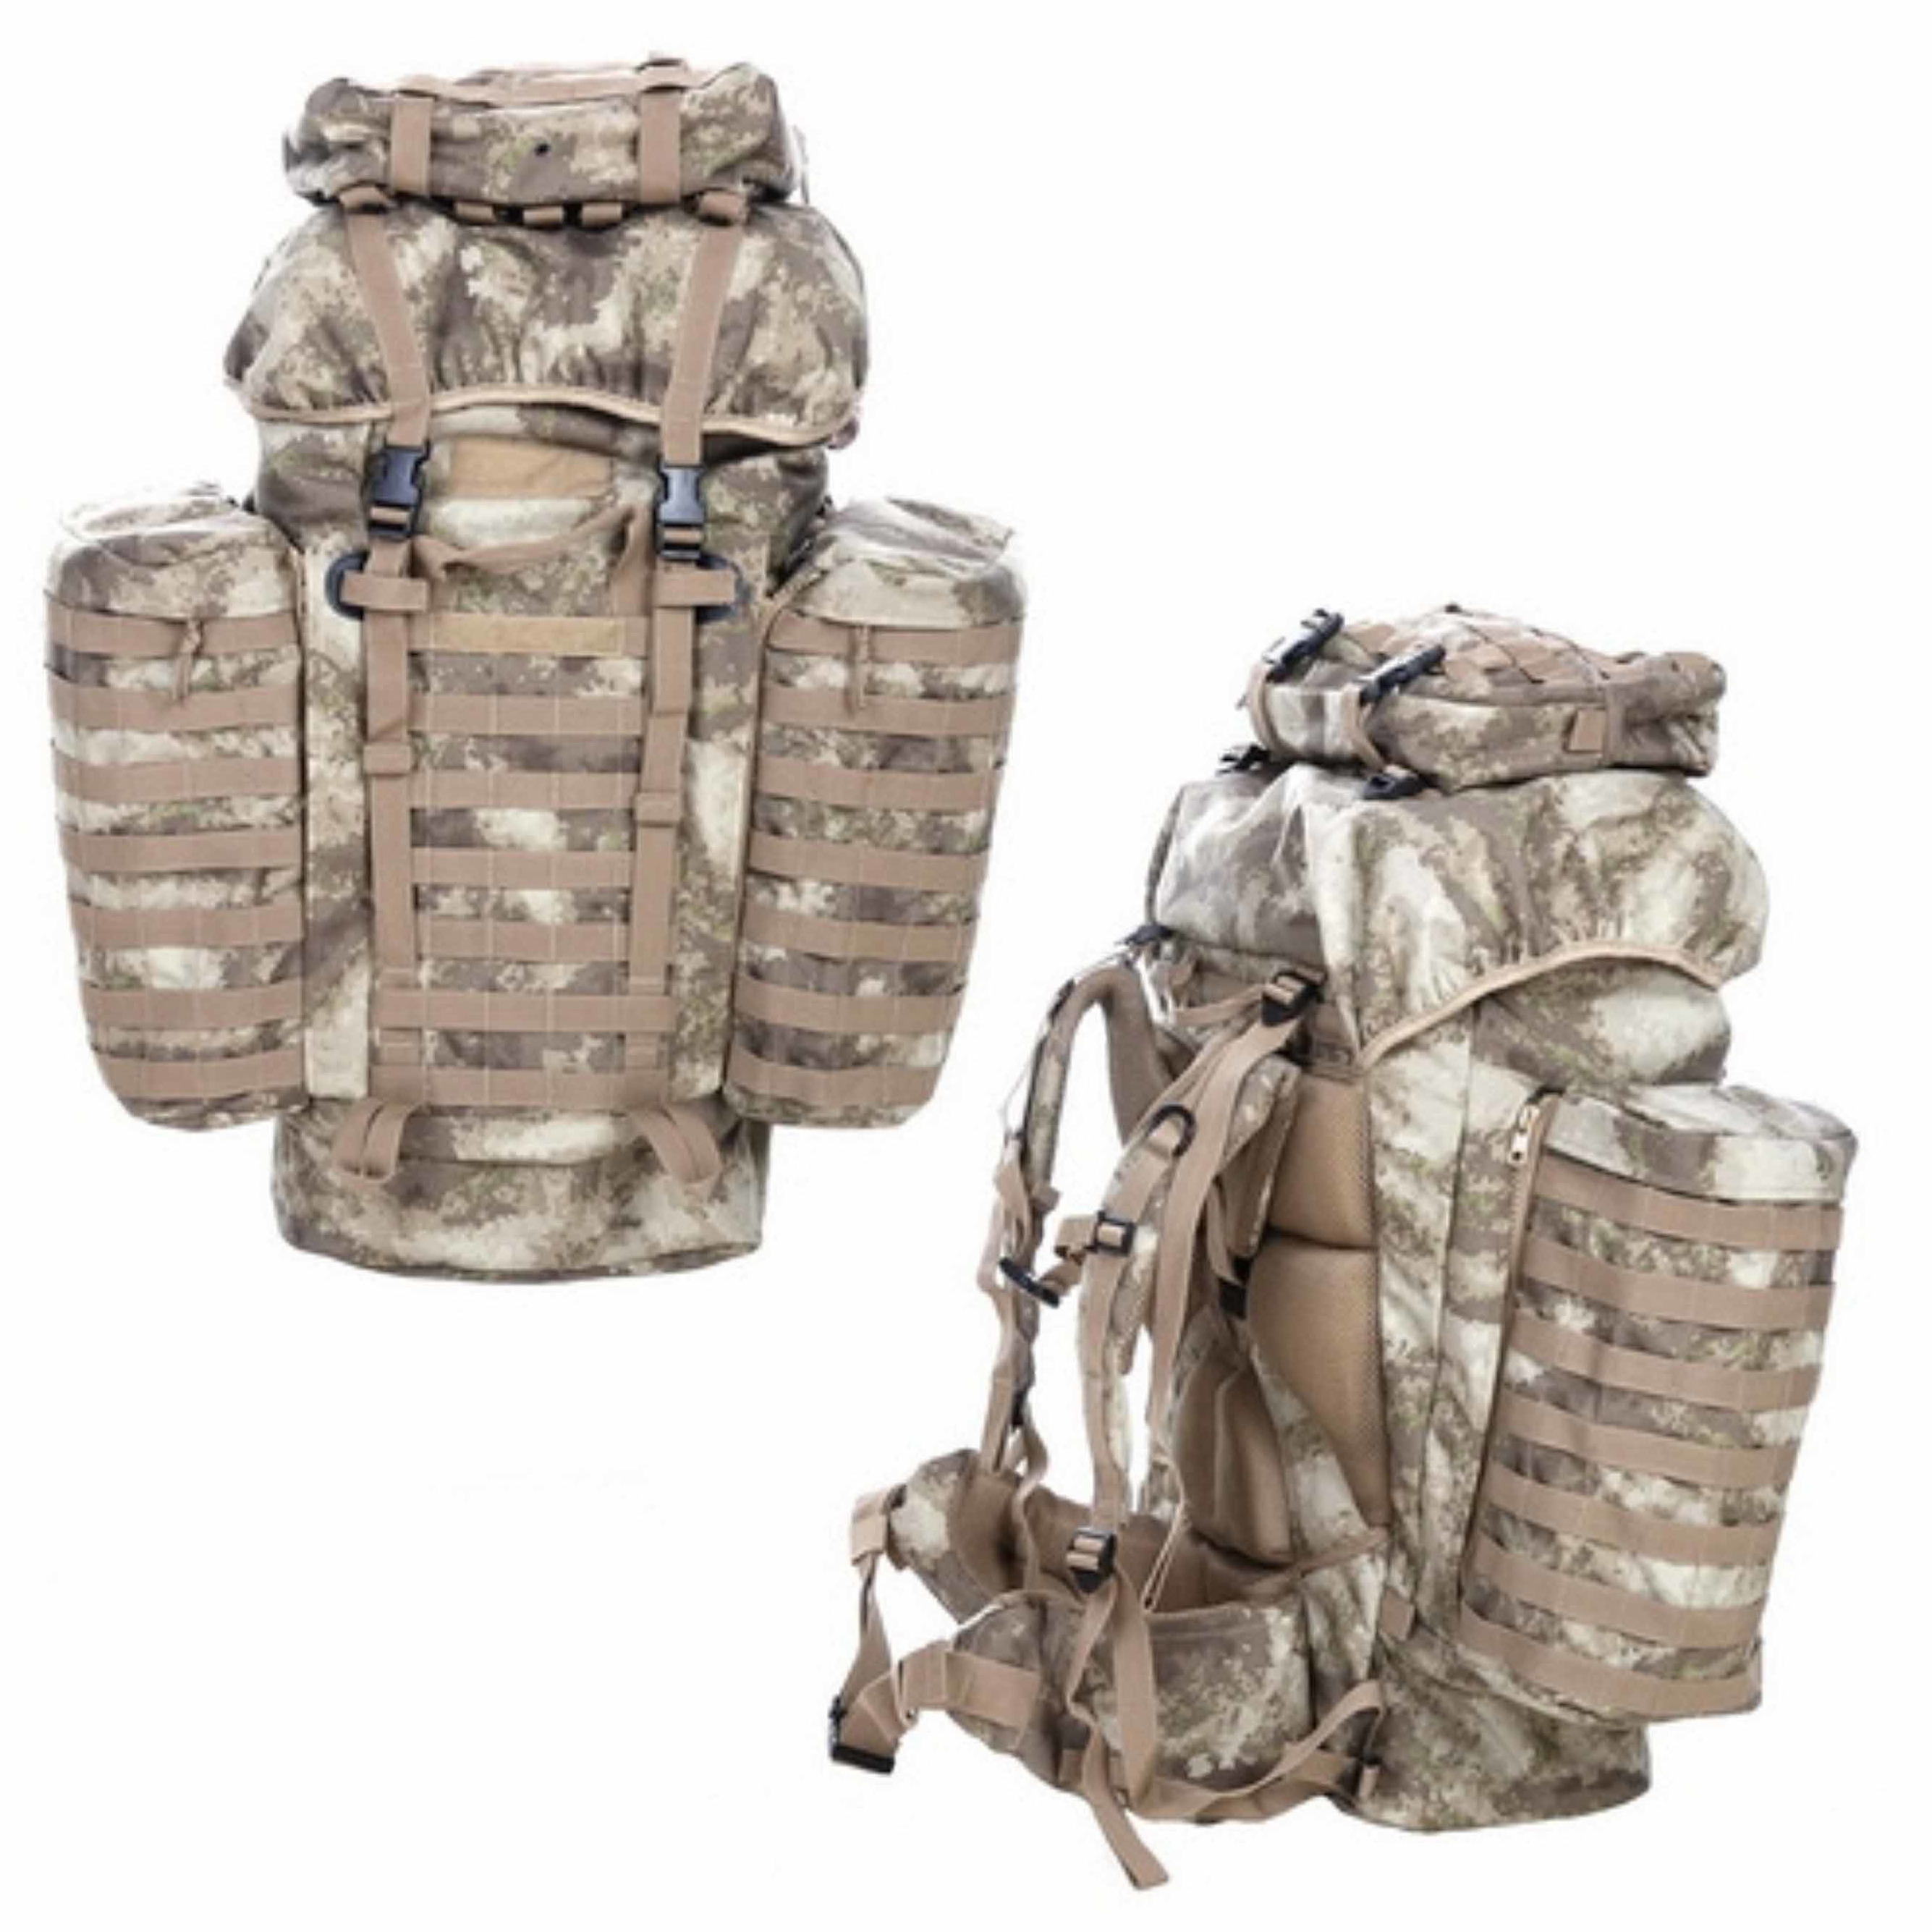 Commando backpack 70 liter met MOLLE systeem